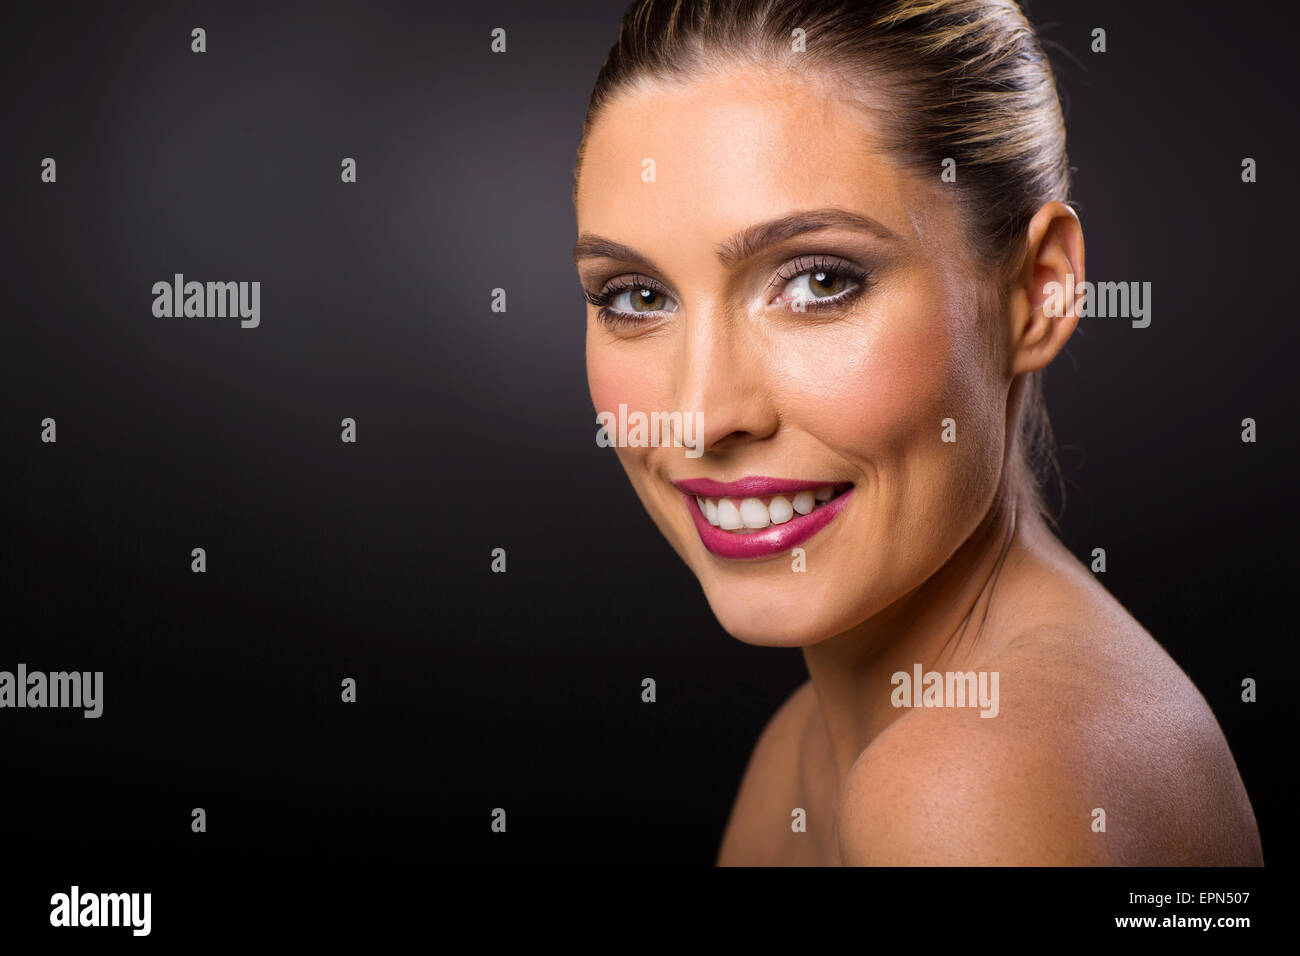 Modelo femenino con piel clara mirando a la cámara Foto de stock